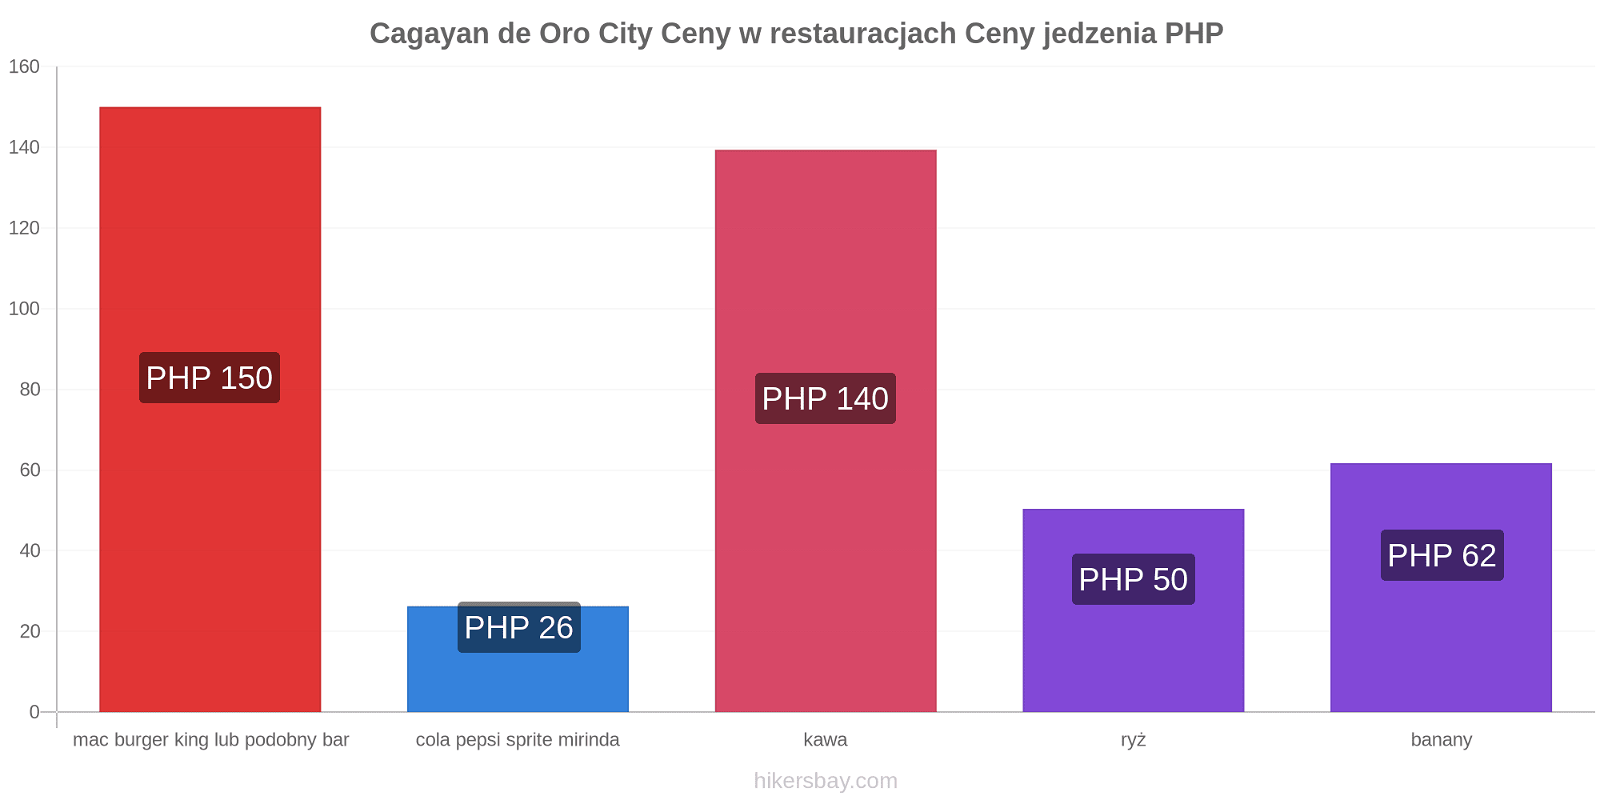 Cagayan de Oro City zmiany cen hikersbay.com